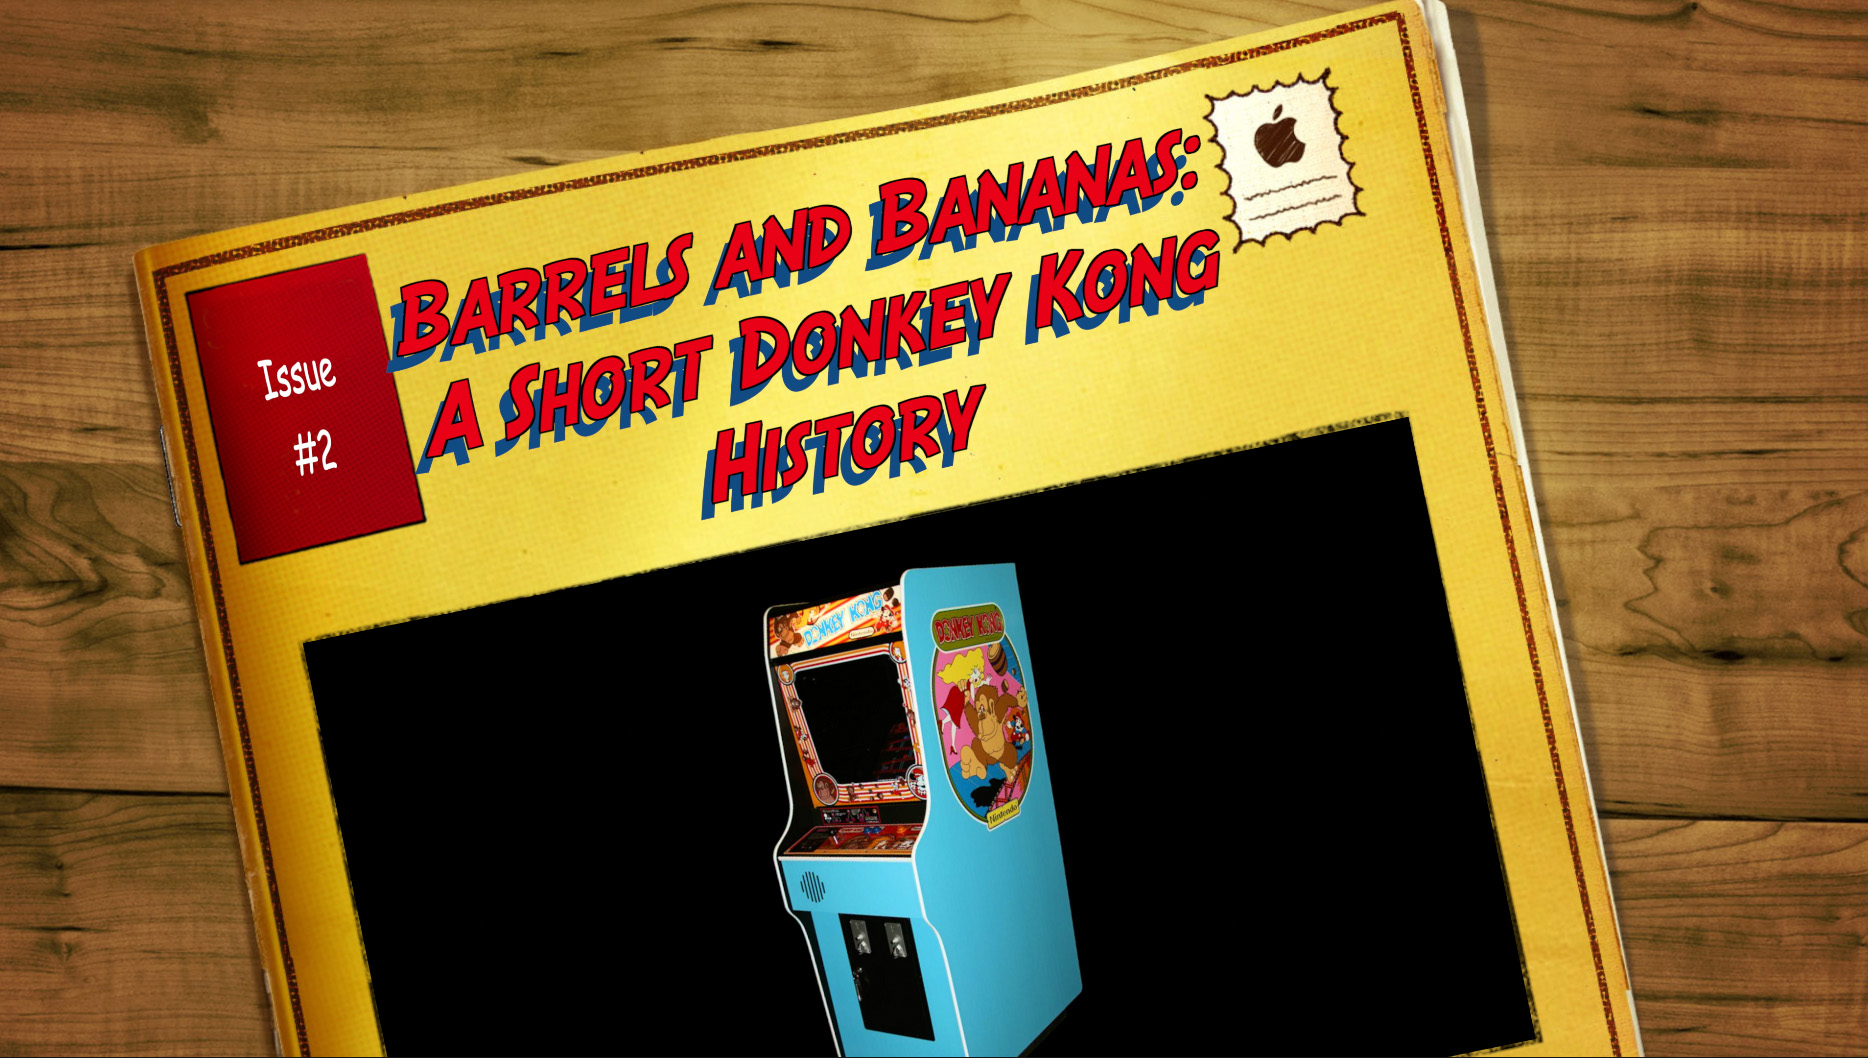 Barrels and Bananas: A Short Donkey Kong History